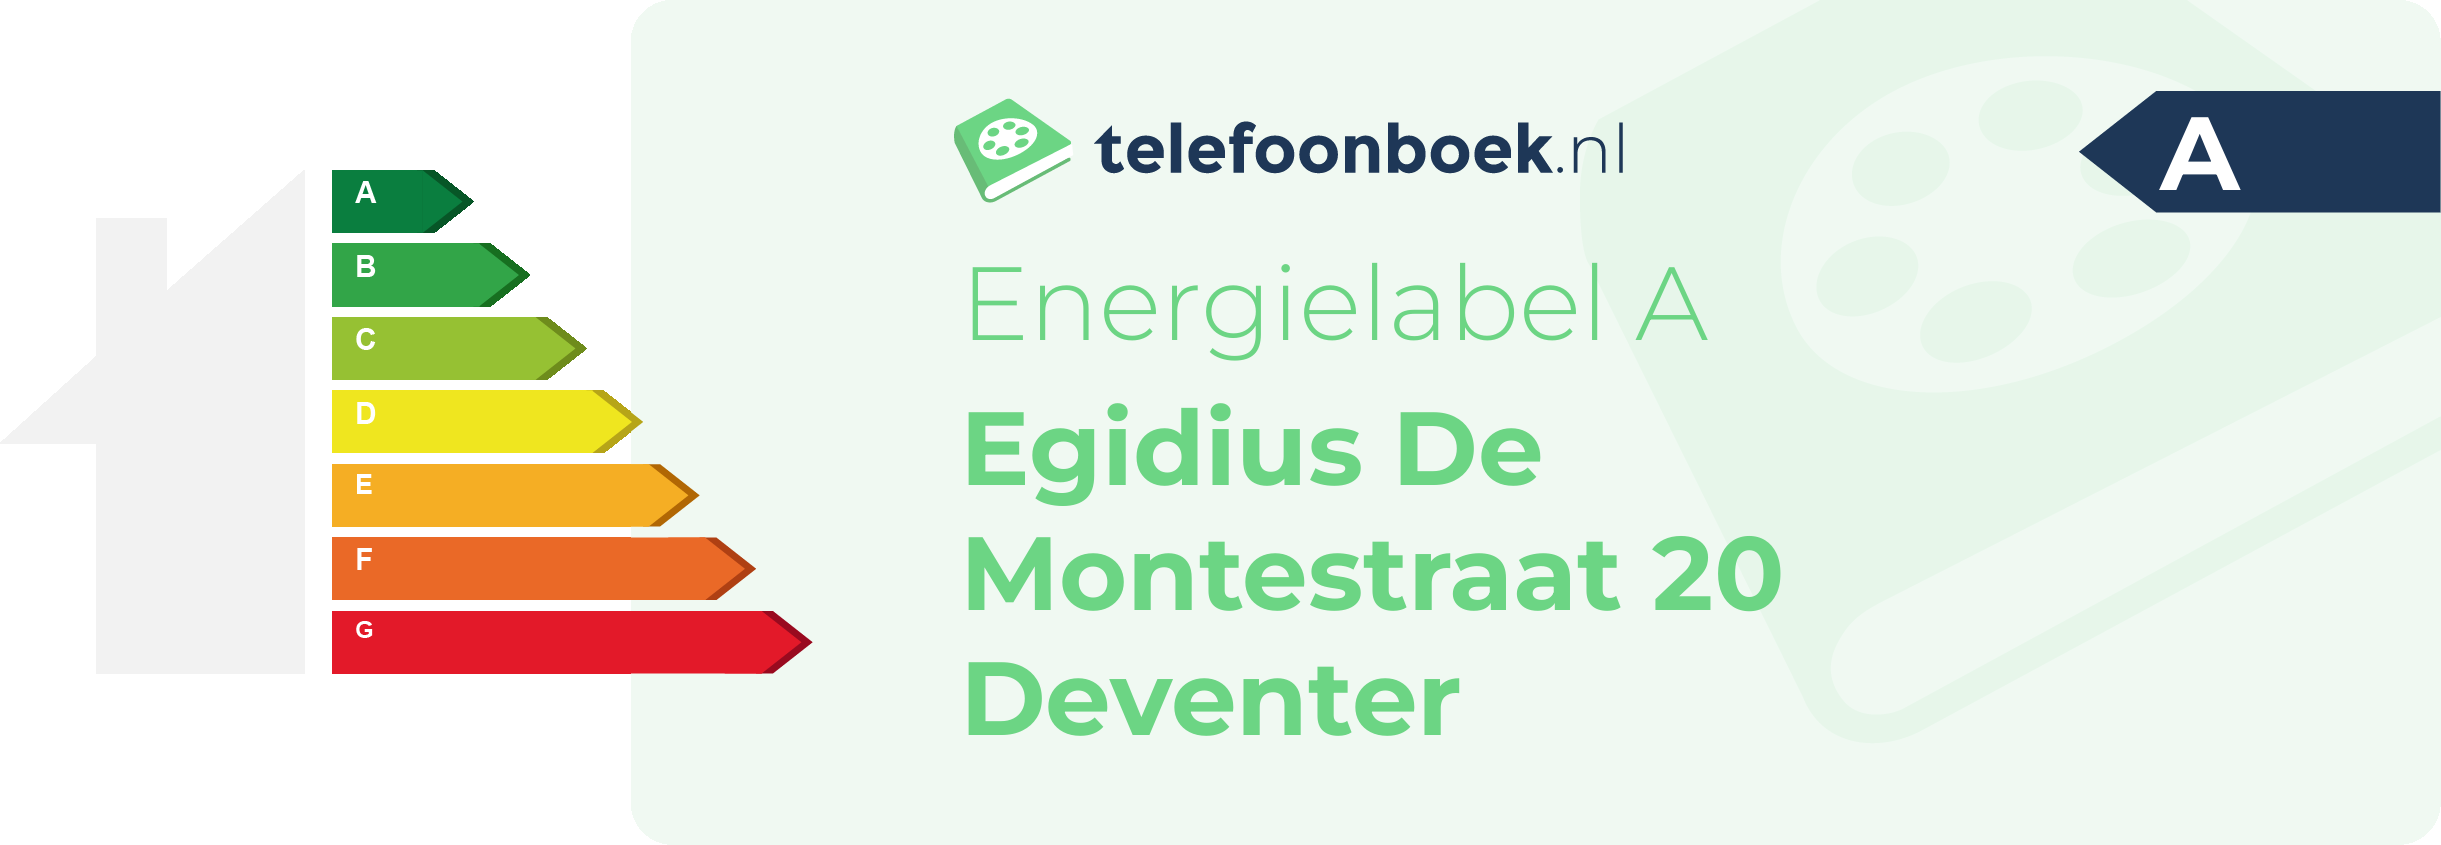 Energielabel Egidius De Montestraat 20 Deventer